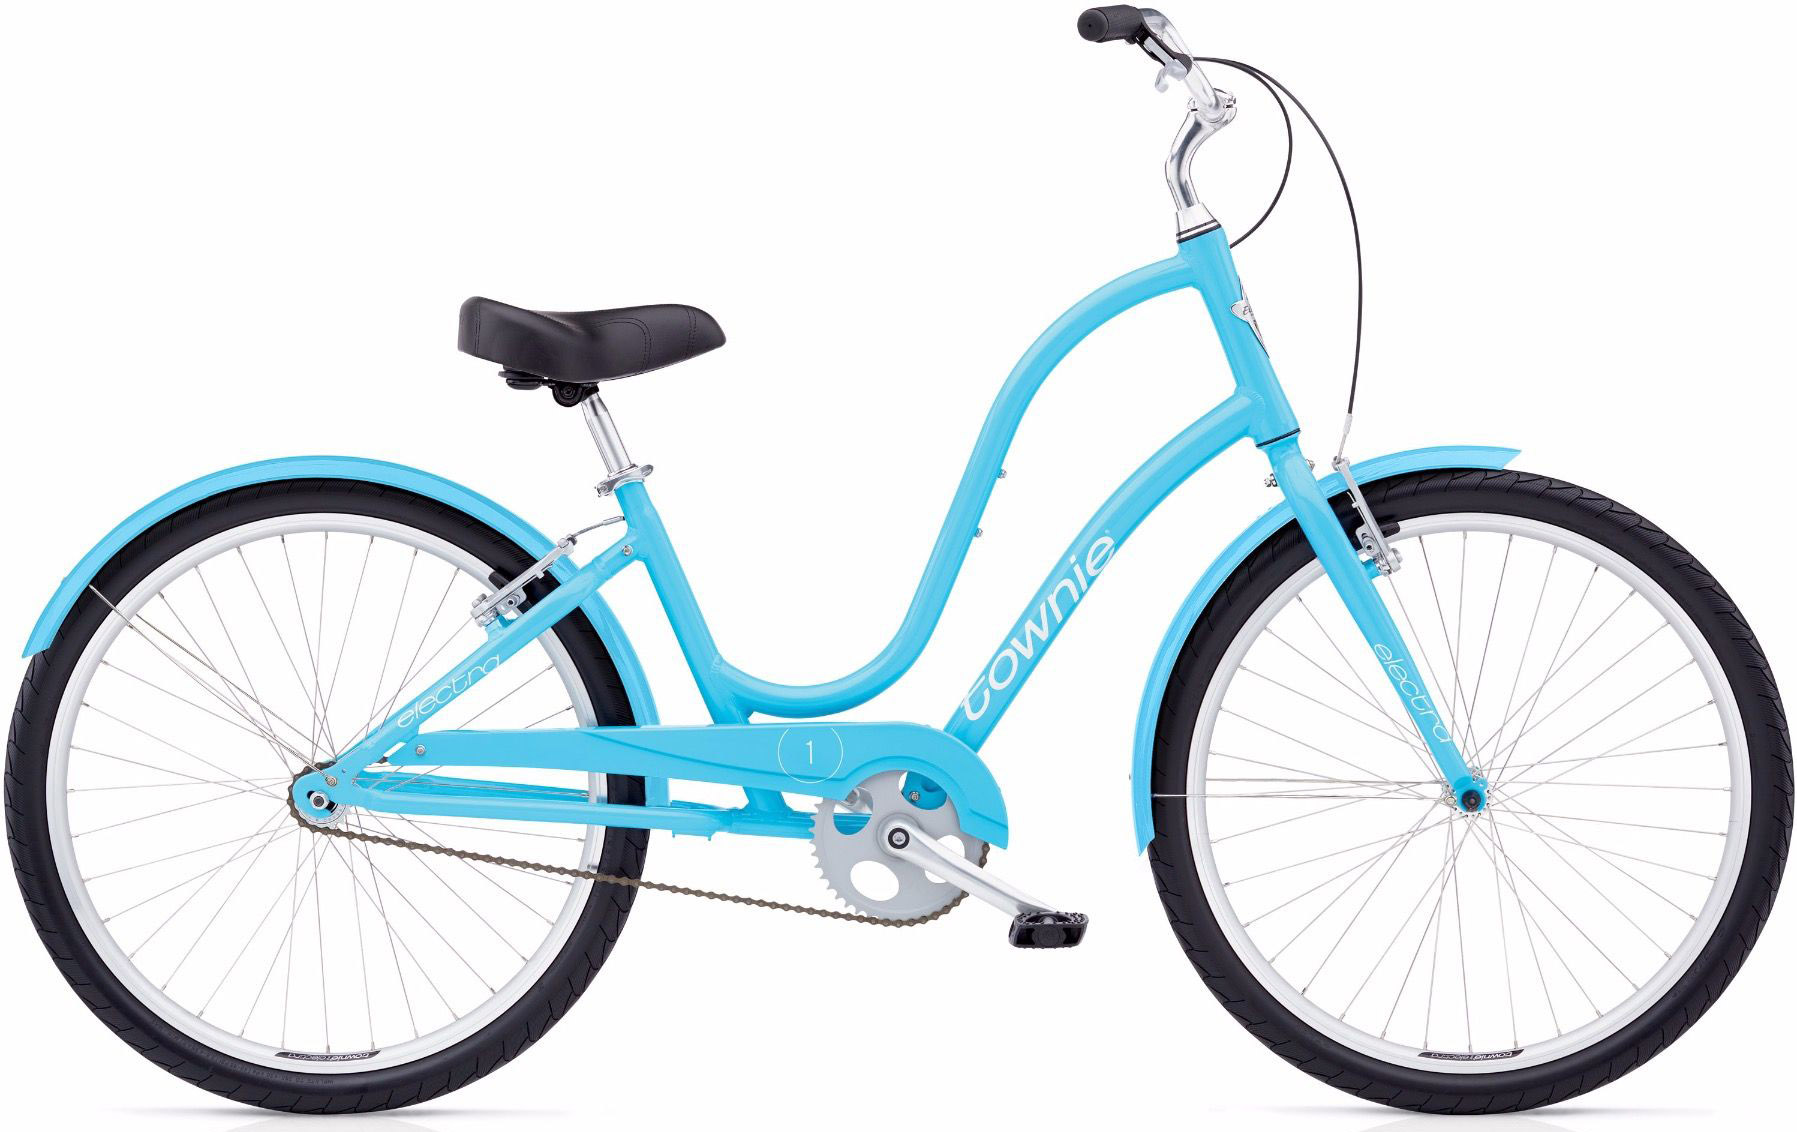  Велосипед Electra Townie Original 1 Ladies 2020